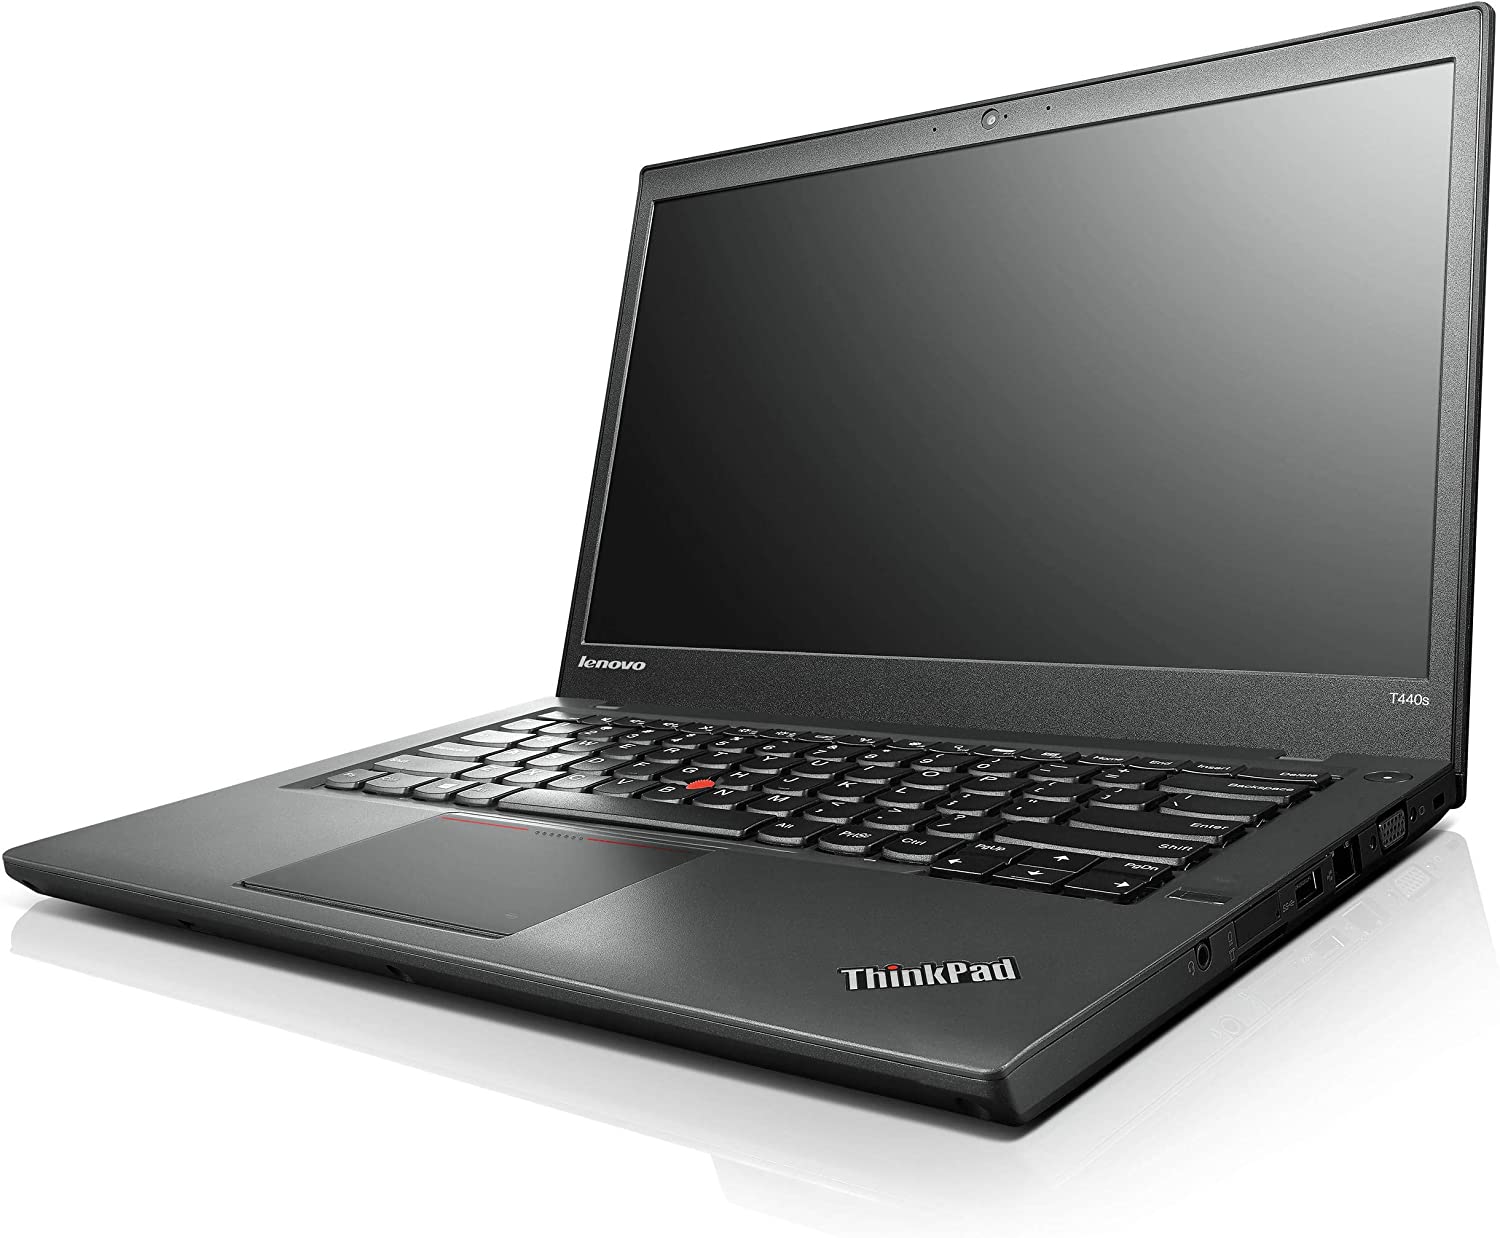 Đánh giá chi tiết Laptop Thinkpad T440s 